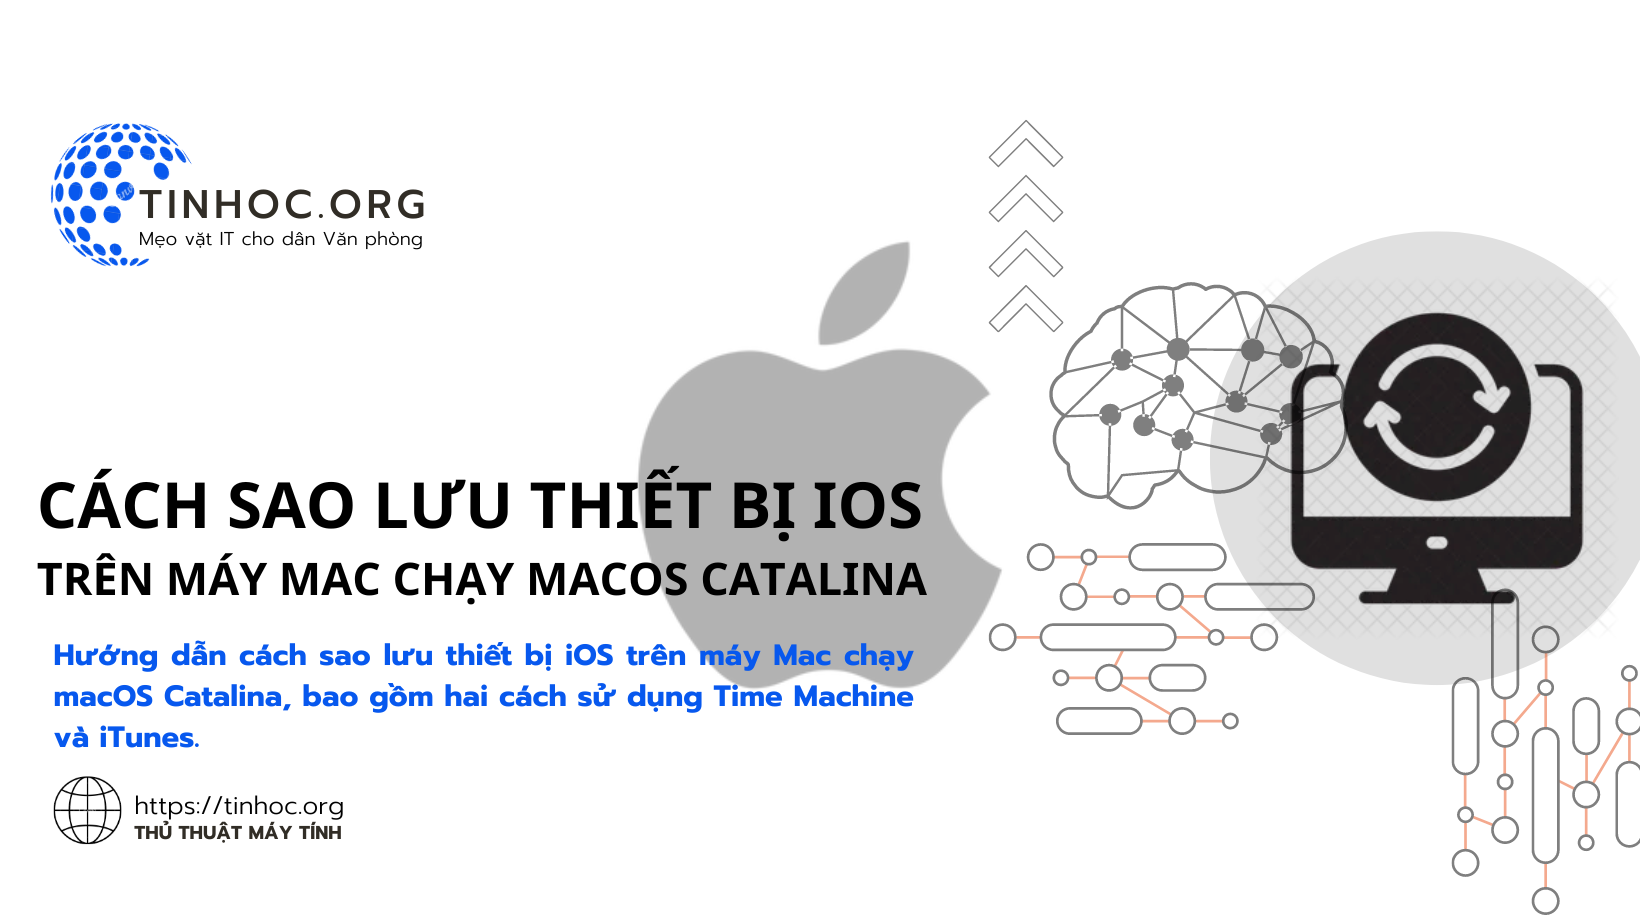 Hướng dẫn cách sao lưu thiết bị iOS trên máy Mac chạy macOS Catalina, bao gồm hai cách sử dụng Time Machine và iTunes.